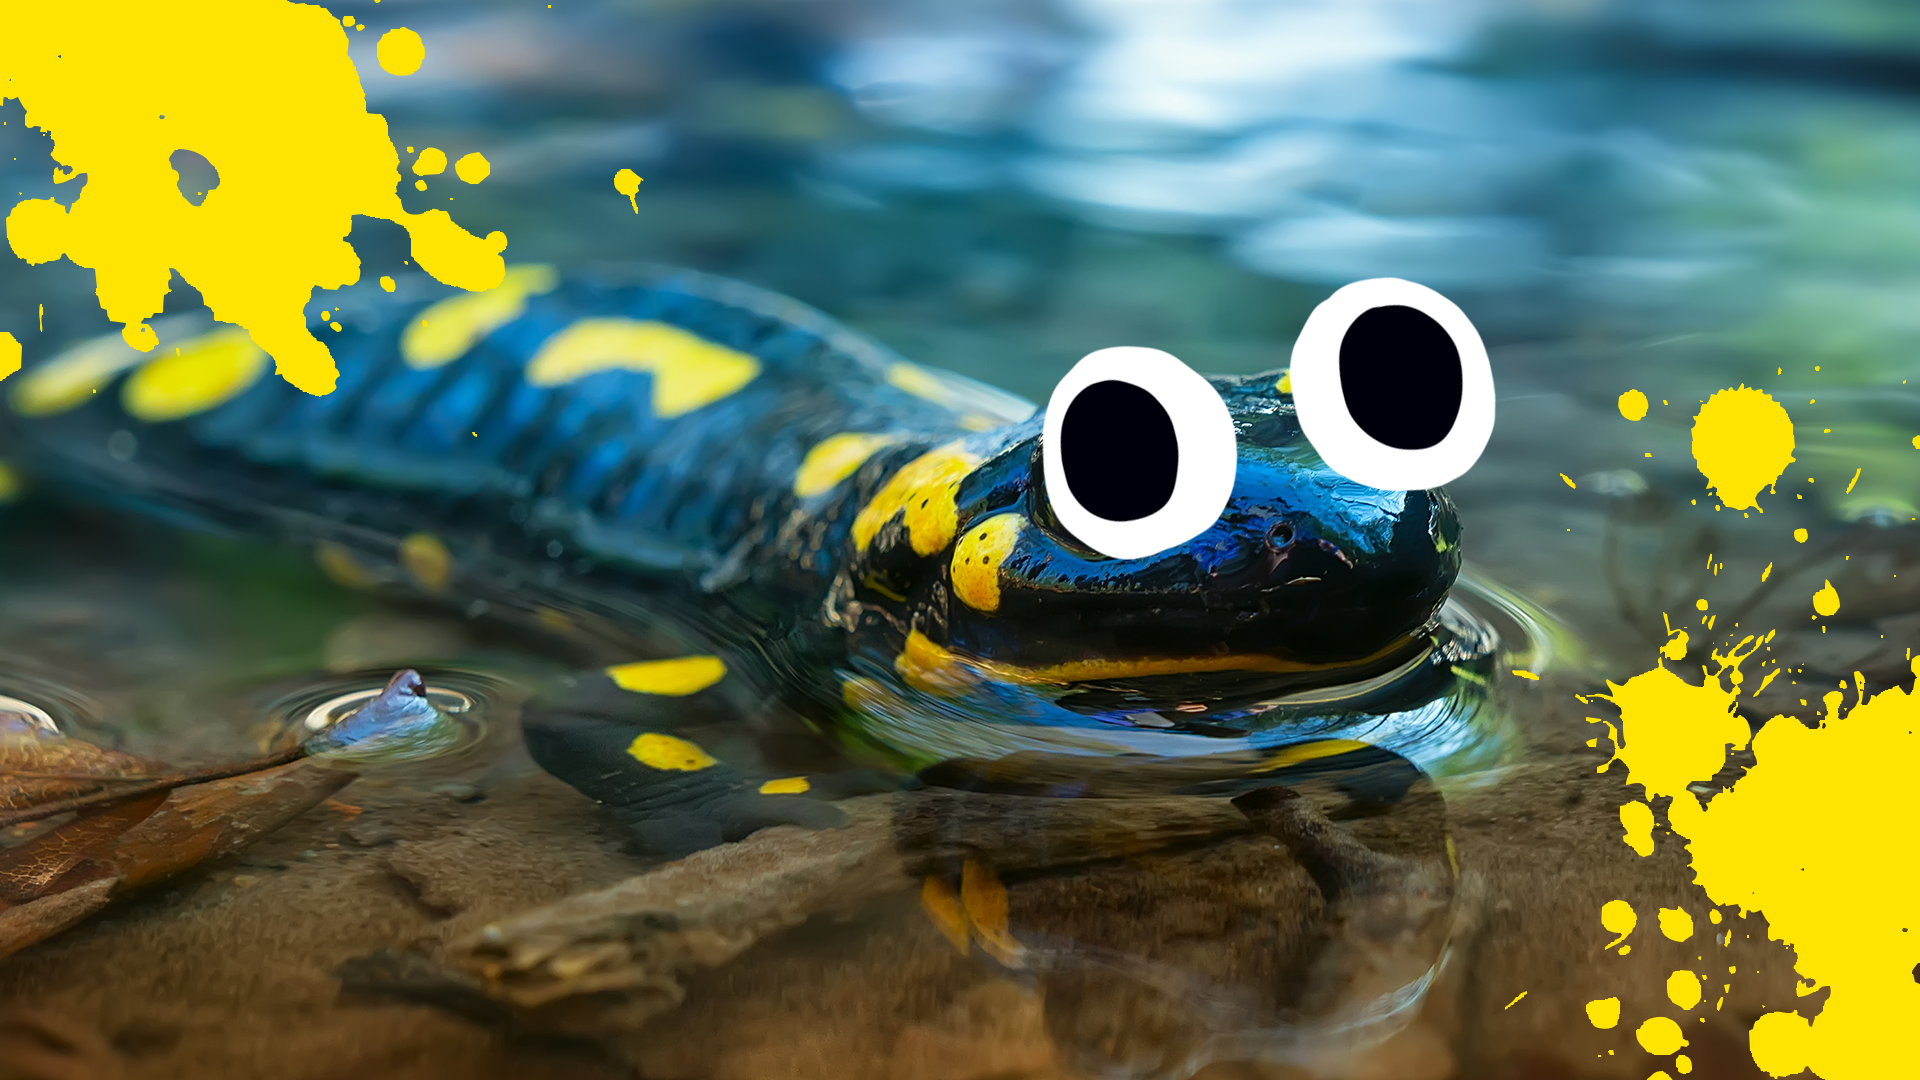 Goofy lil salamander and splats